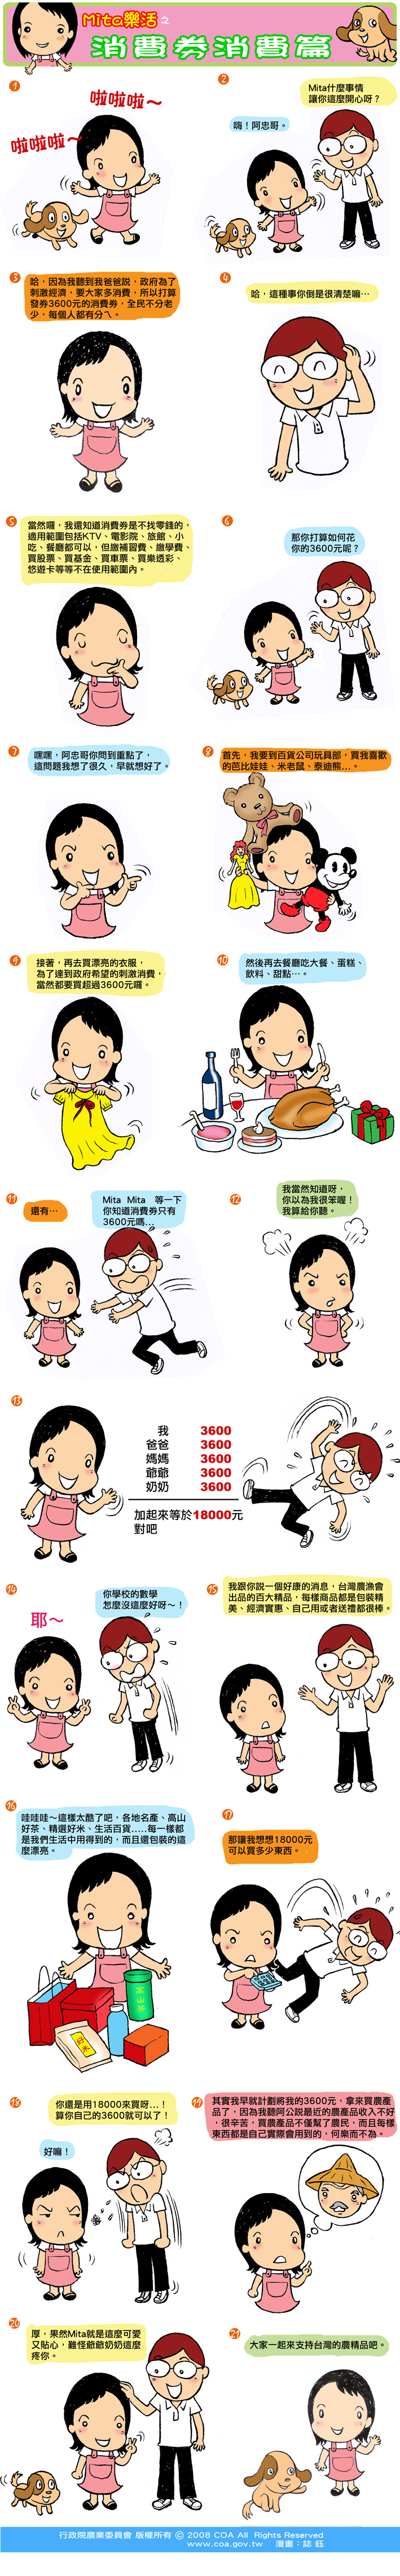 這是一篇關於Mita樂活之消費券消費篇主題的漫畫，詳細內容可參考下方詳細說明